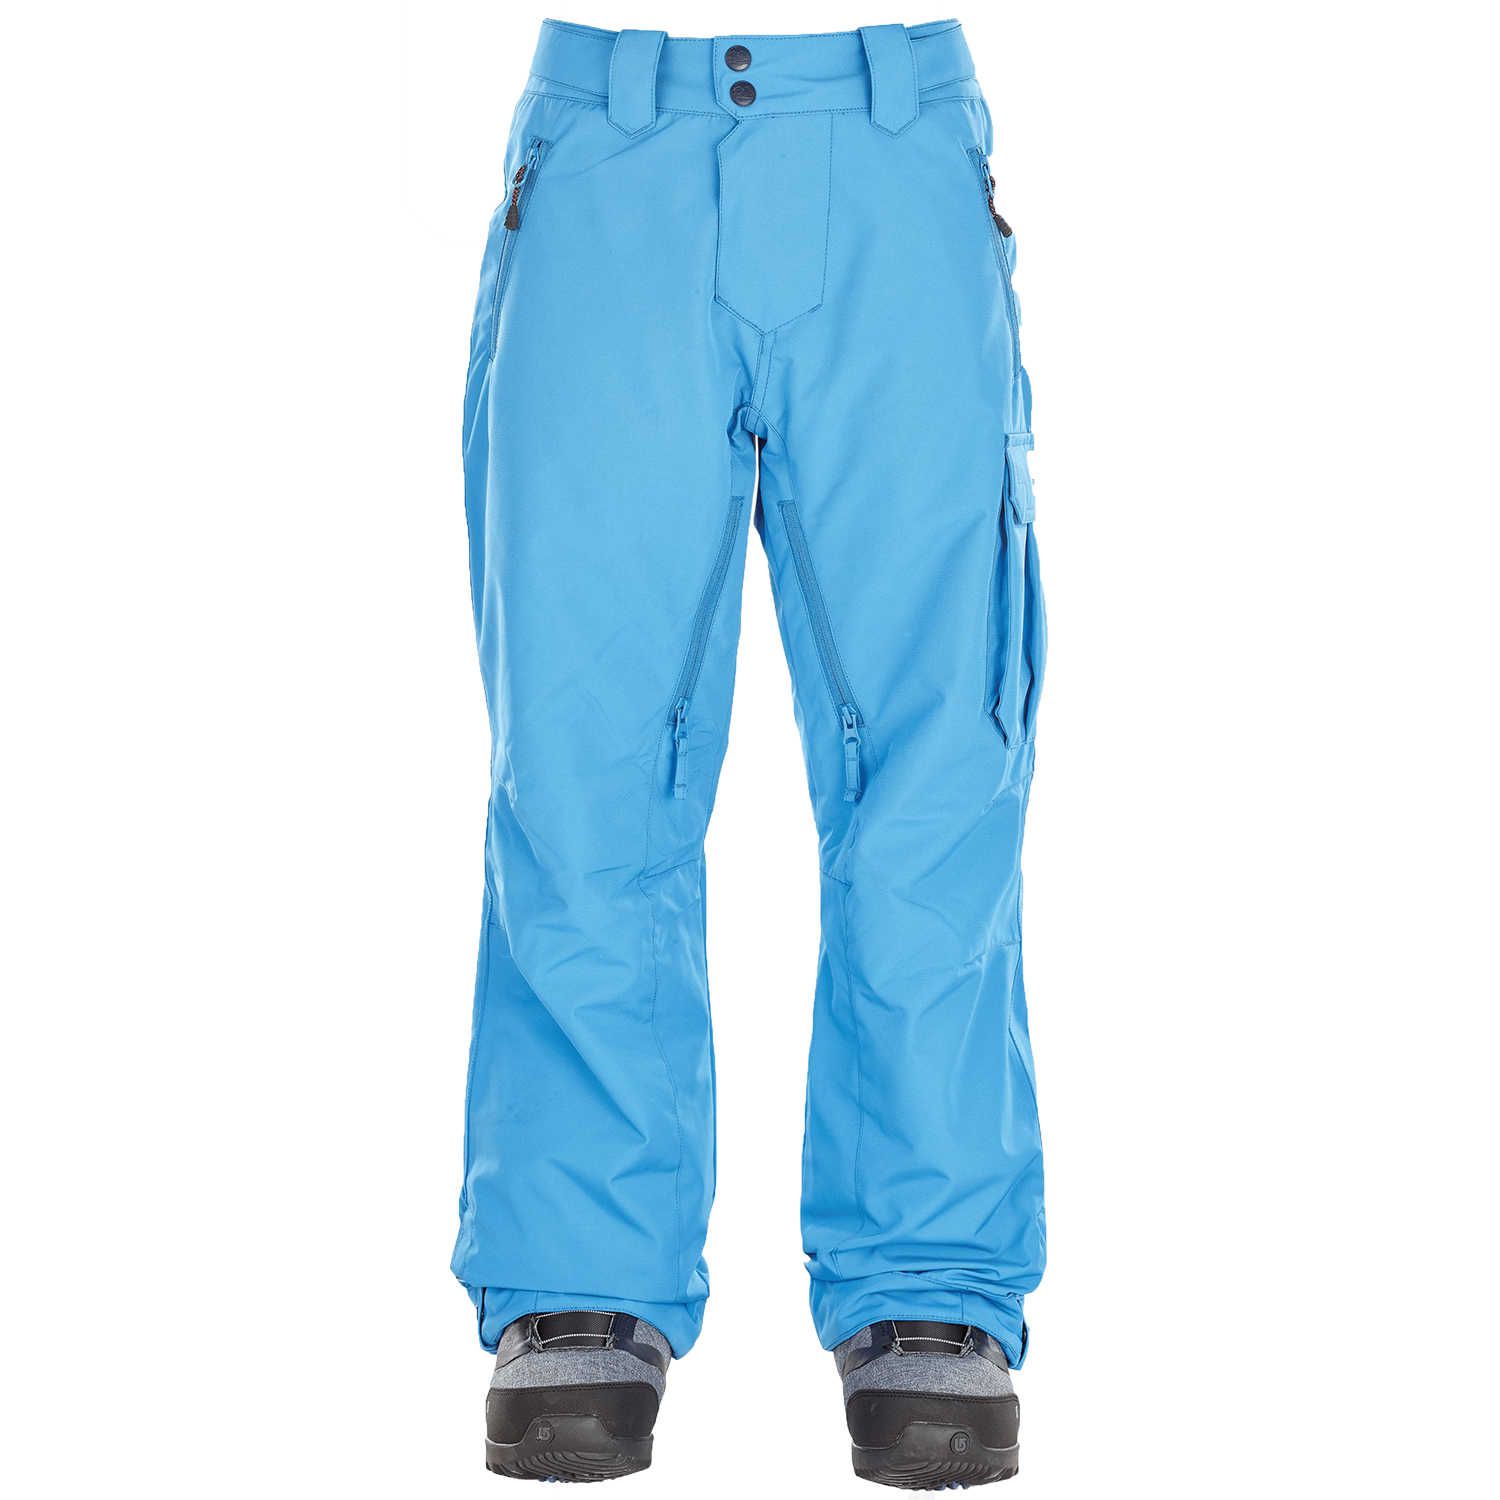 Pantalon ski Enfant Other 2 Pant - Pic Blue